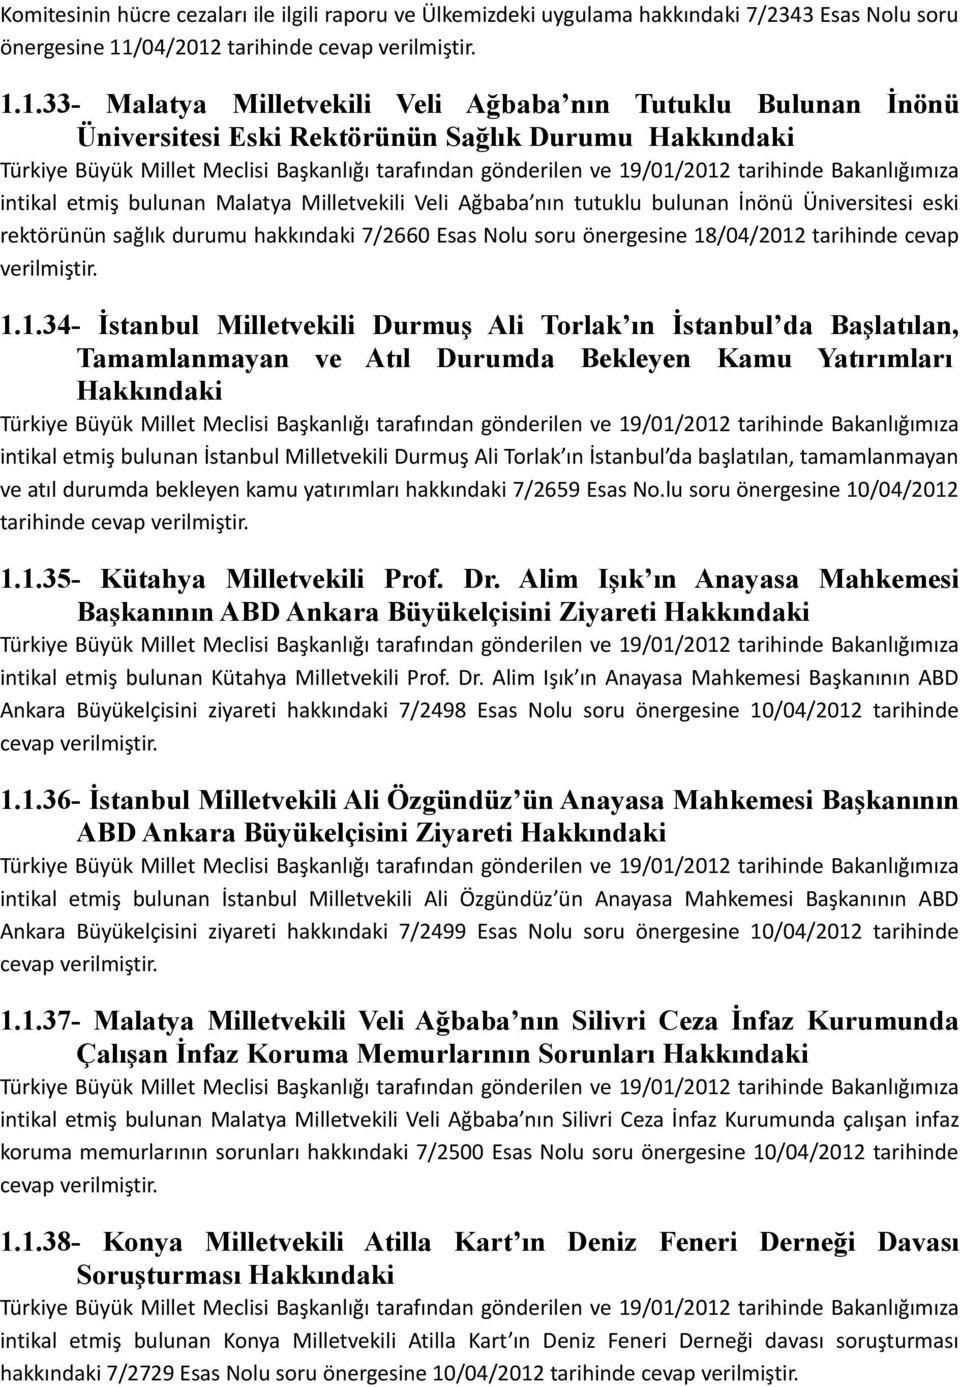 1.1.33- Malatya Milletvekili Veli Ağbaba nın Tutuklu Bulunan İnönü Üniversitesi Eski Rektörünün Sağlık Durumu Türkiye Büyük Millet Meclisi Başkanlığı tarafından gönderilen ve 19/01/2012 tarihinde